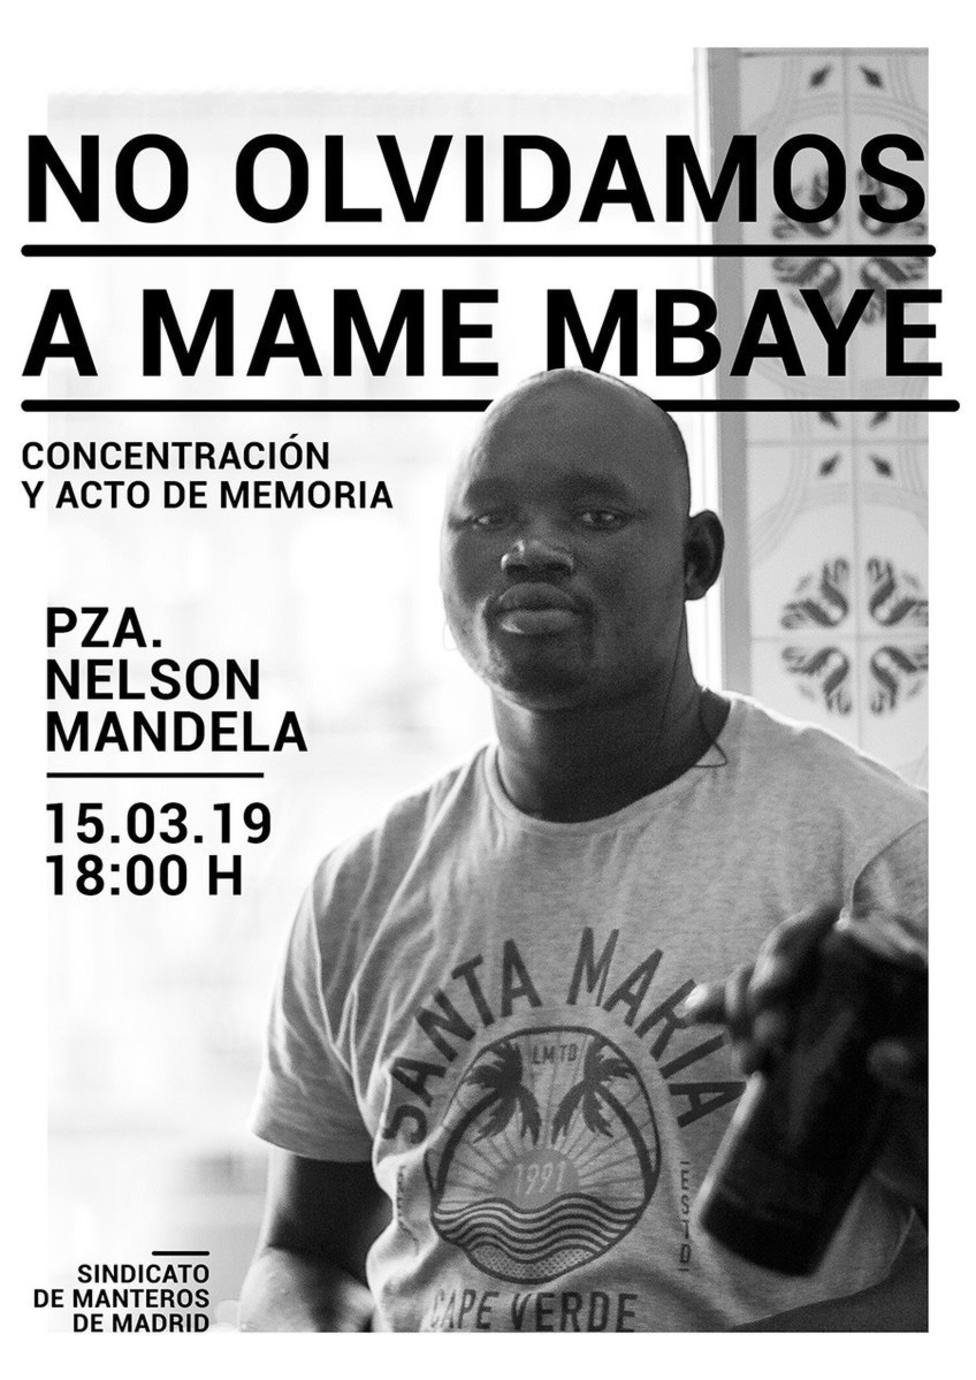 El Sindicato de Manteros convoca hoy una concentración en recuerdo de Mame Mbaye un año después de su muerte